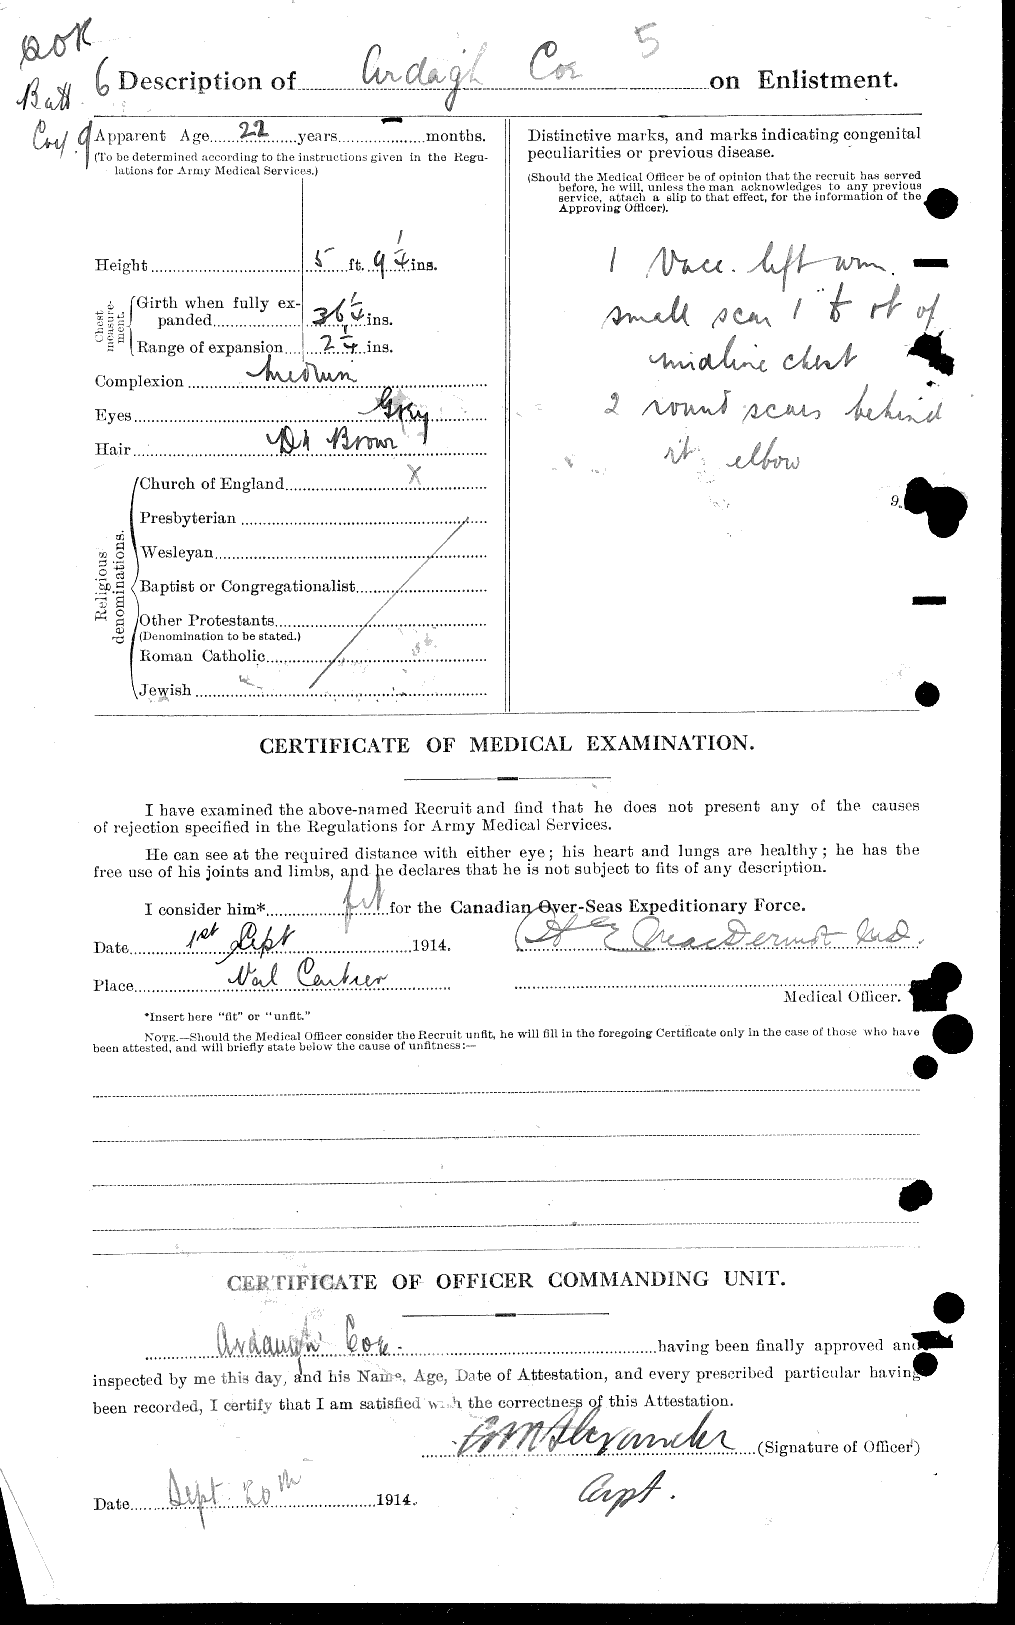 Dossiers du Personnel de la Première Guerre mondiale - CEC 026937b